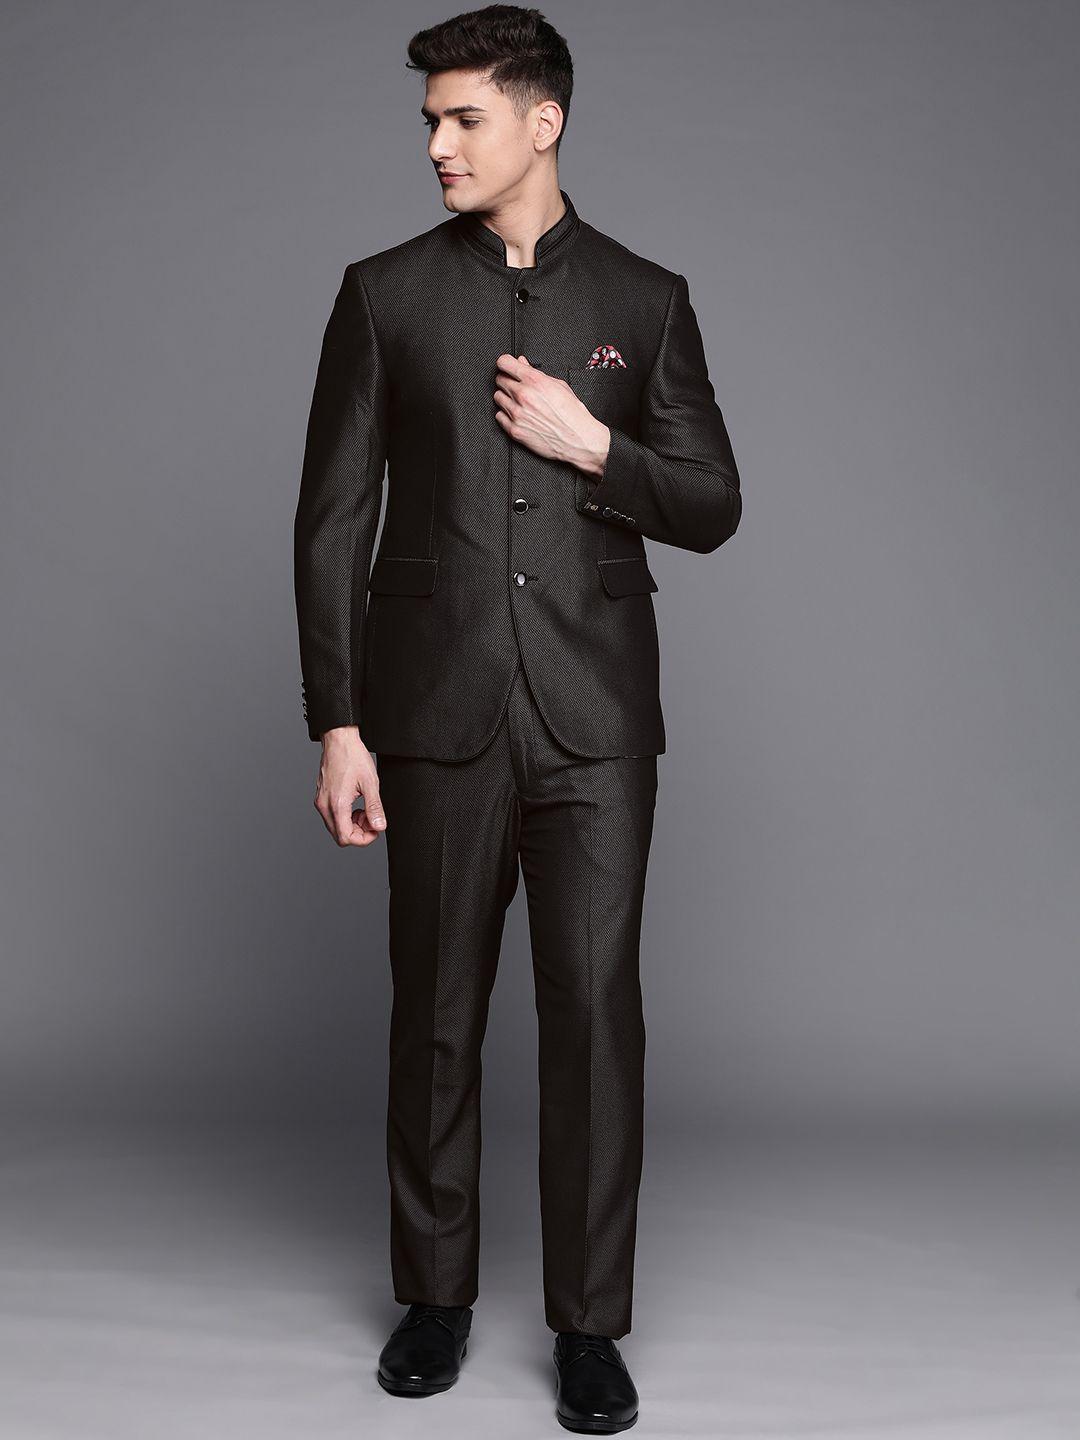 manu men black & grey self design single-breasted bandhgala suit